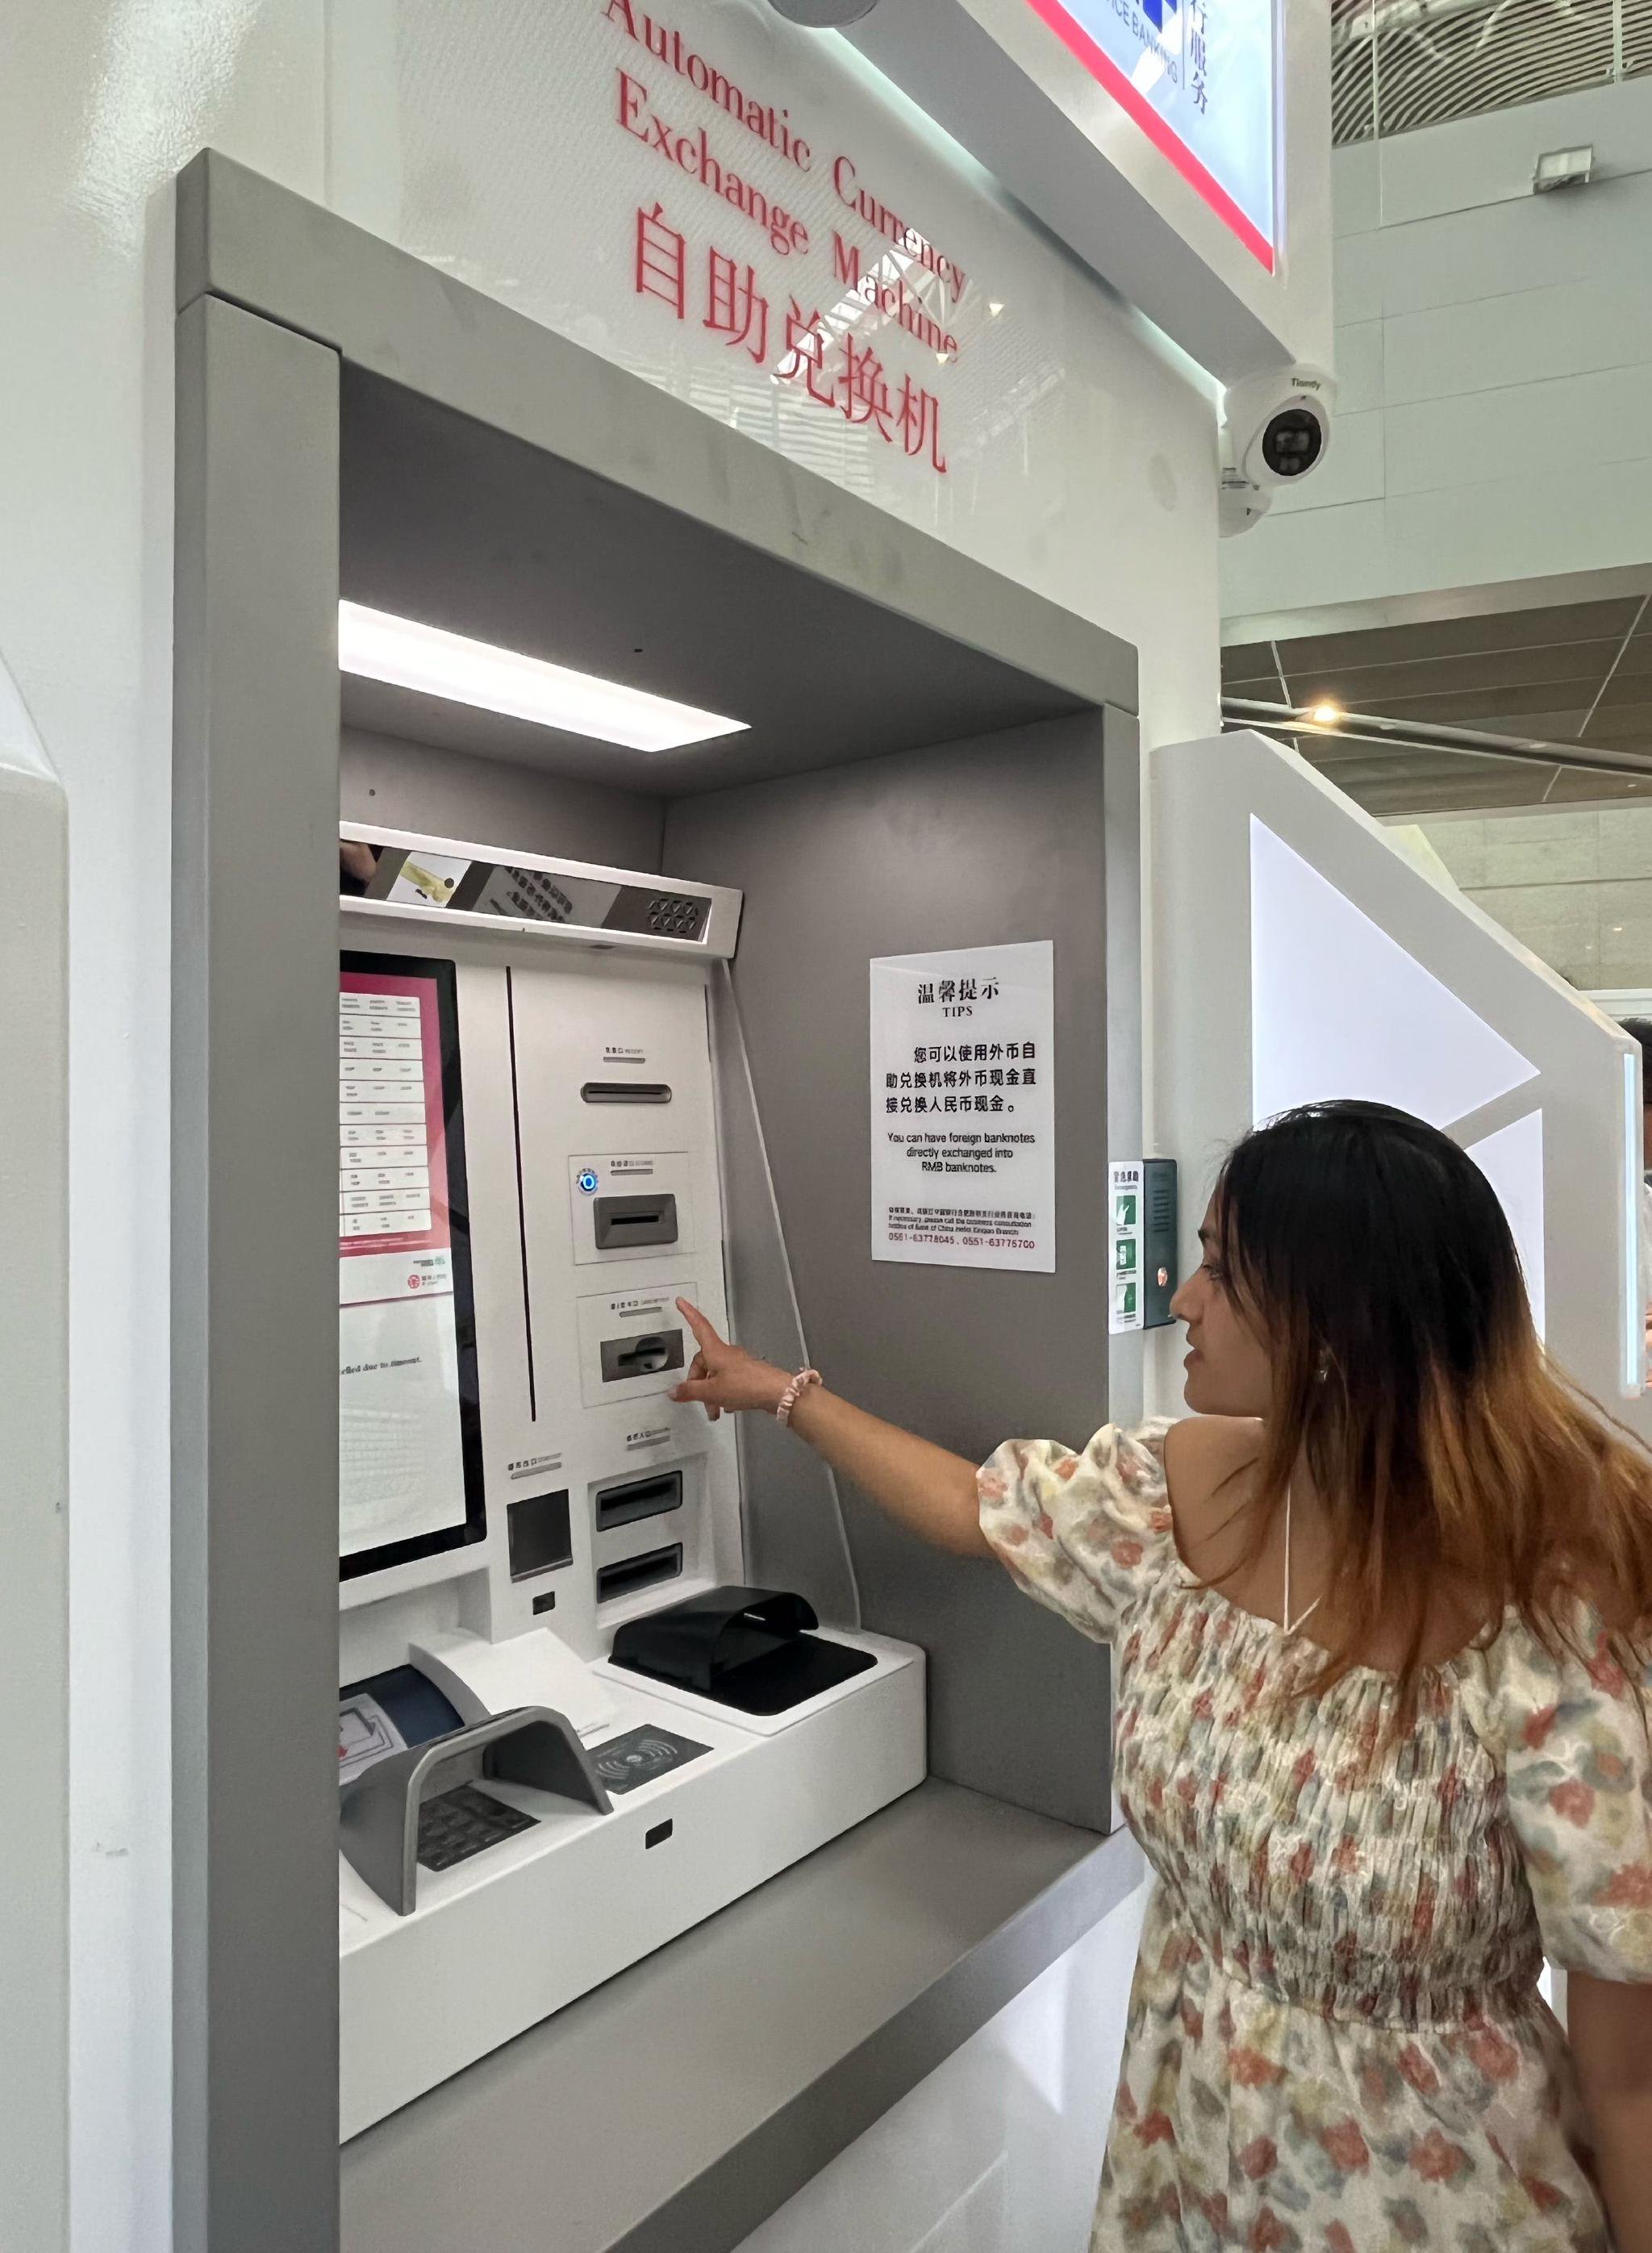 安徽中行在合肥新桥国际机场投放了全省唯一一台外币自助兑换机，为境外来华人士提供快捷、便利的服务体验。